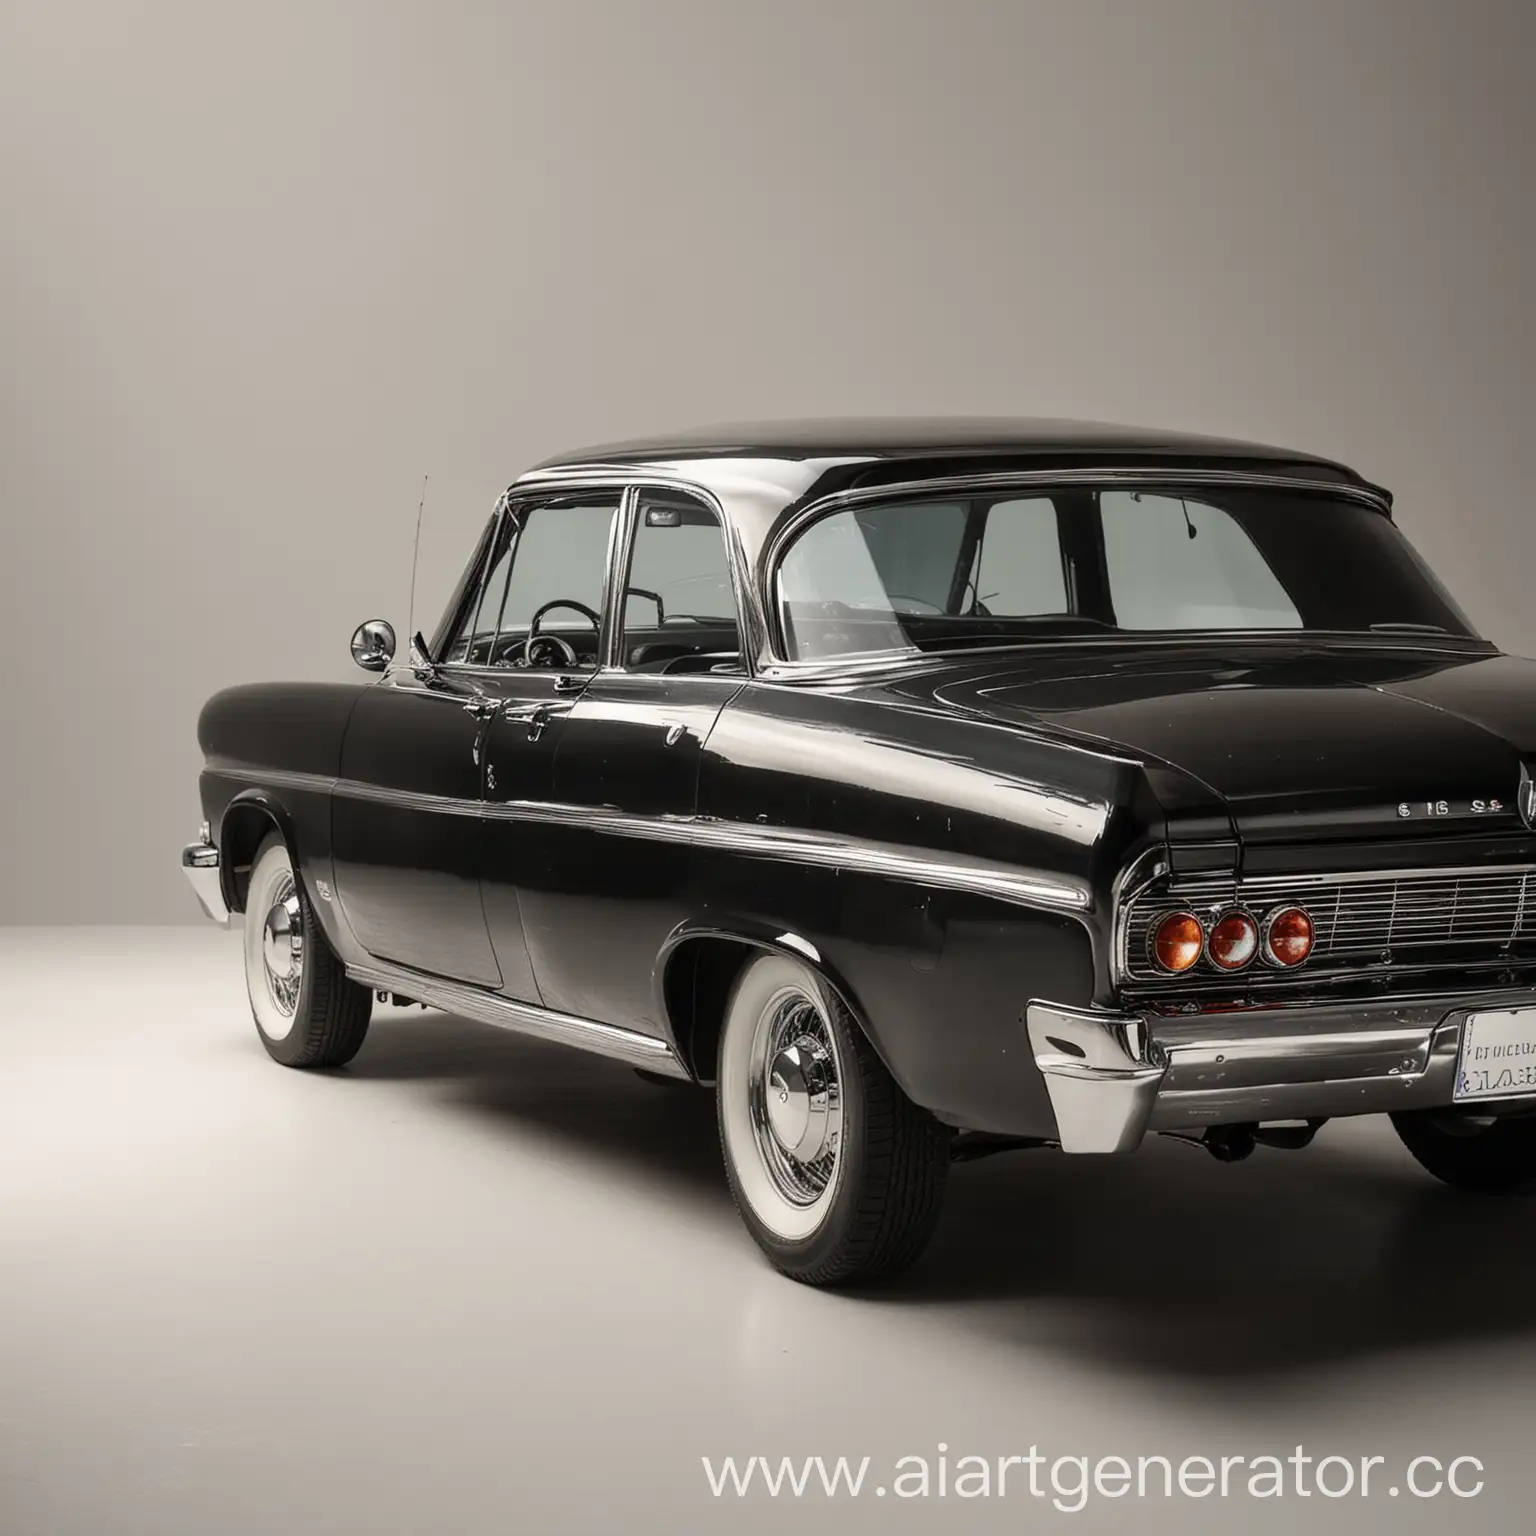 Vintage-Black-Car-on-Light-Background